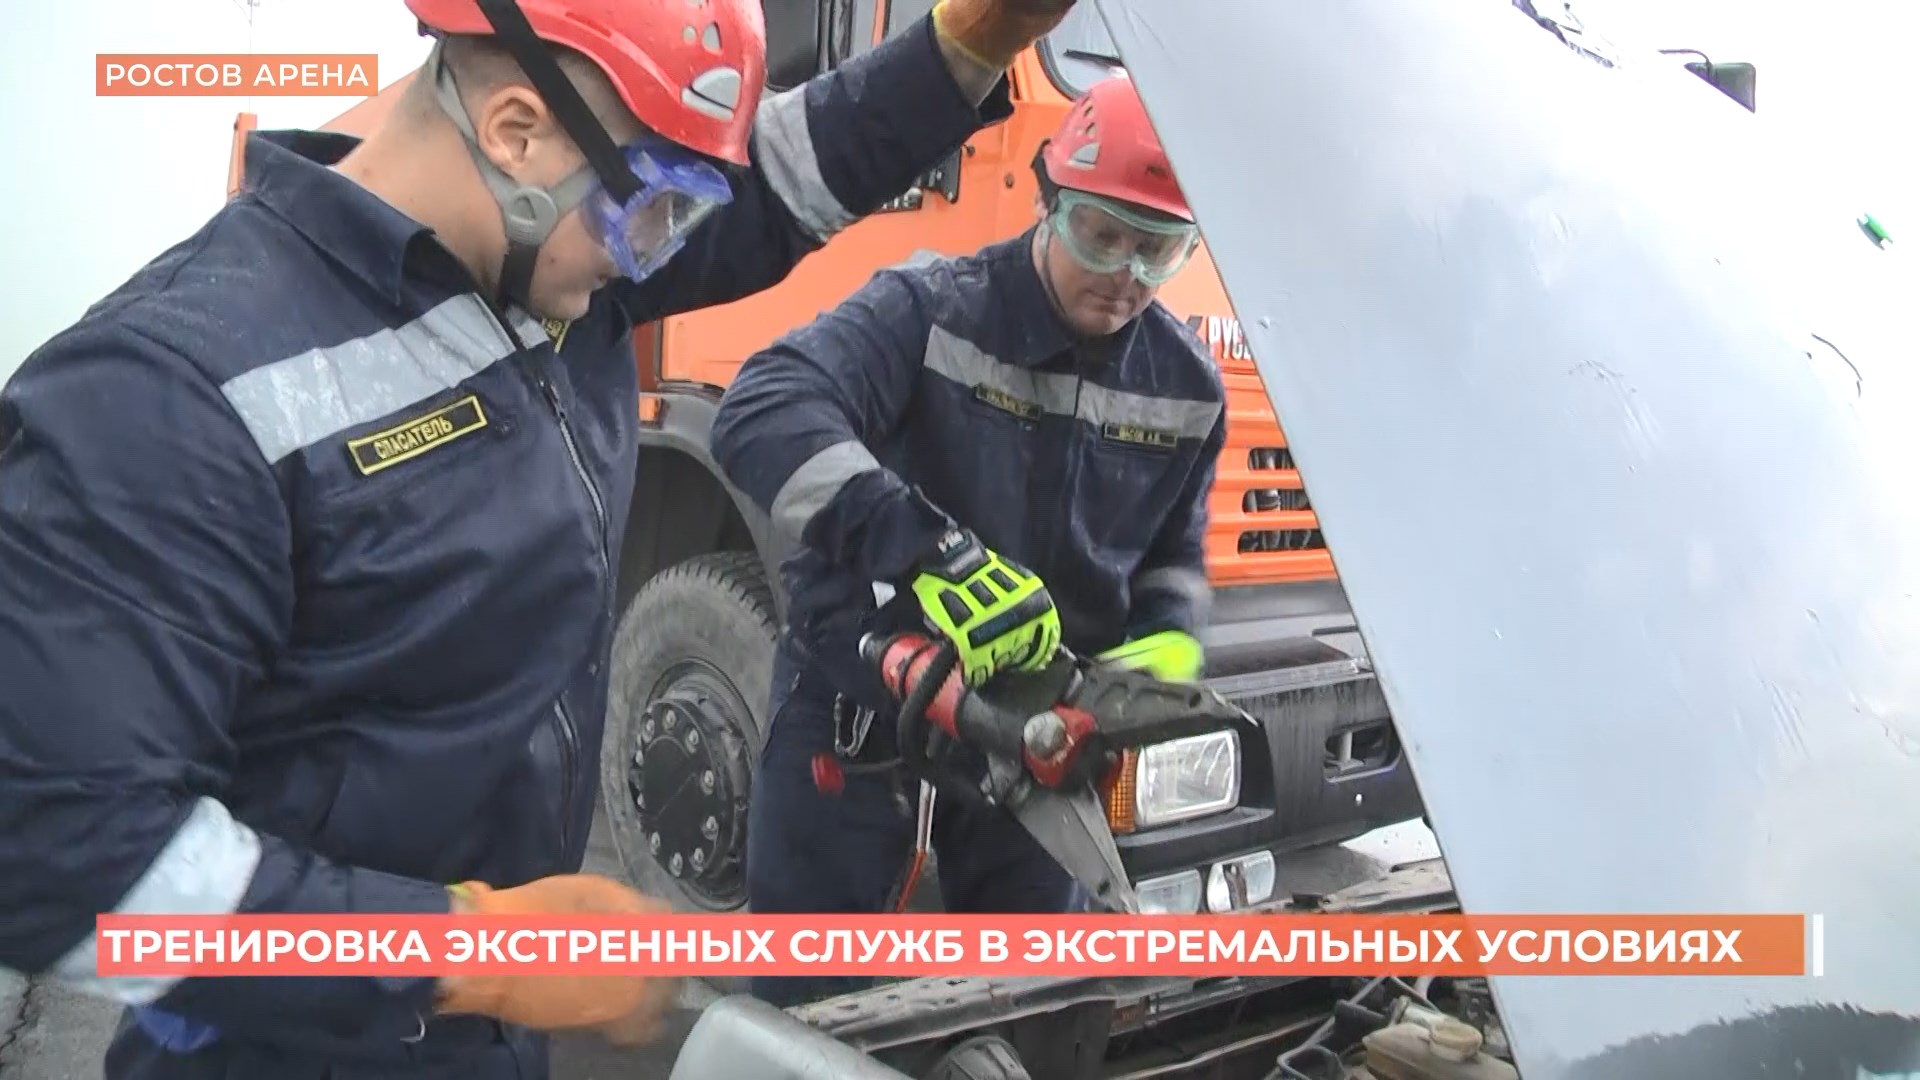 Тренировка экстренных служб прошла на парковке «Ростов-Арены» в экстремальных условиях